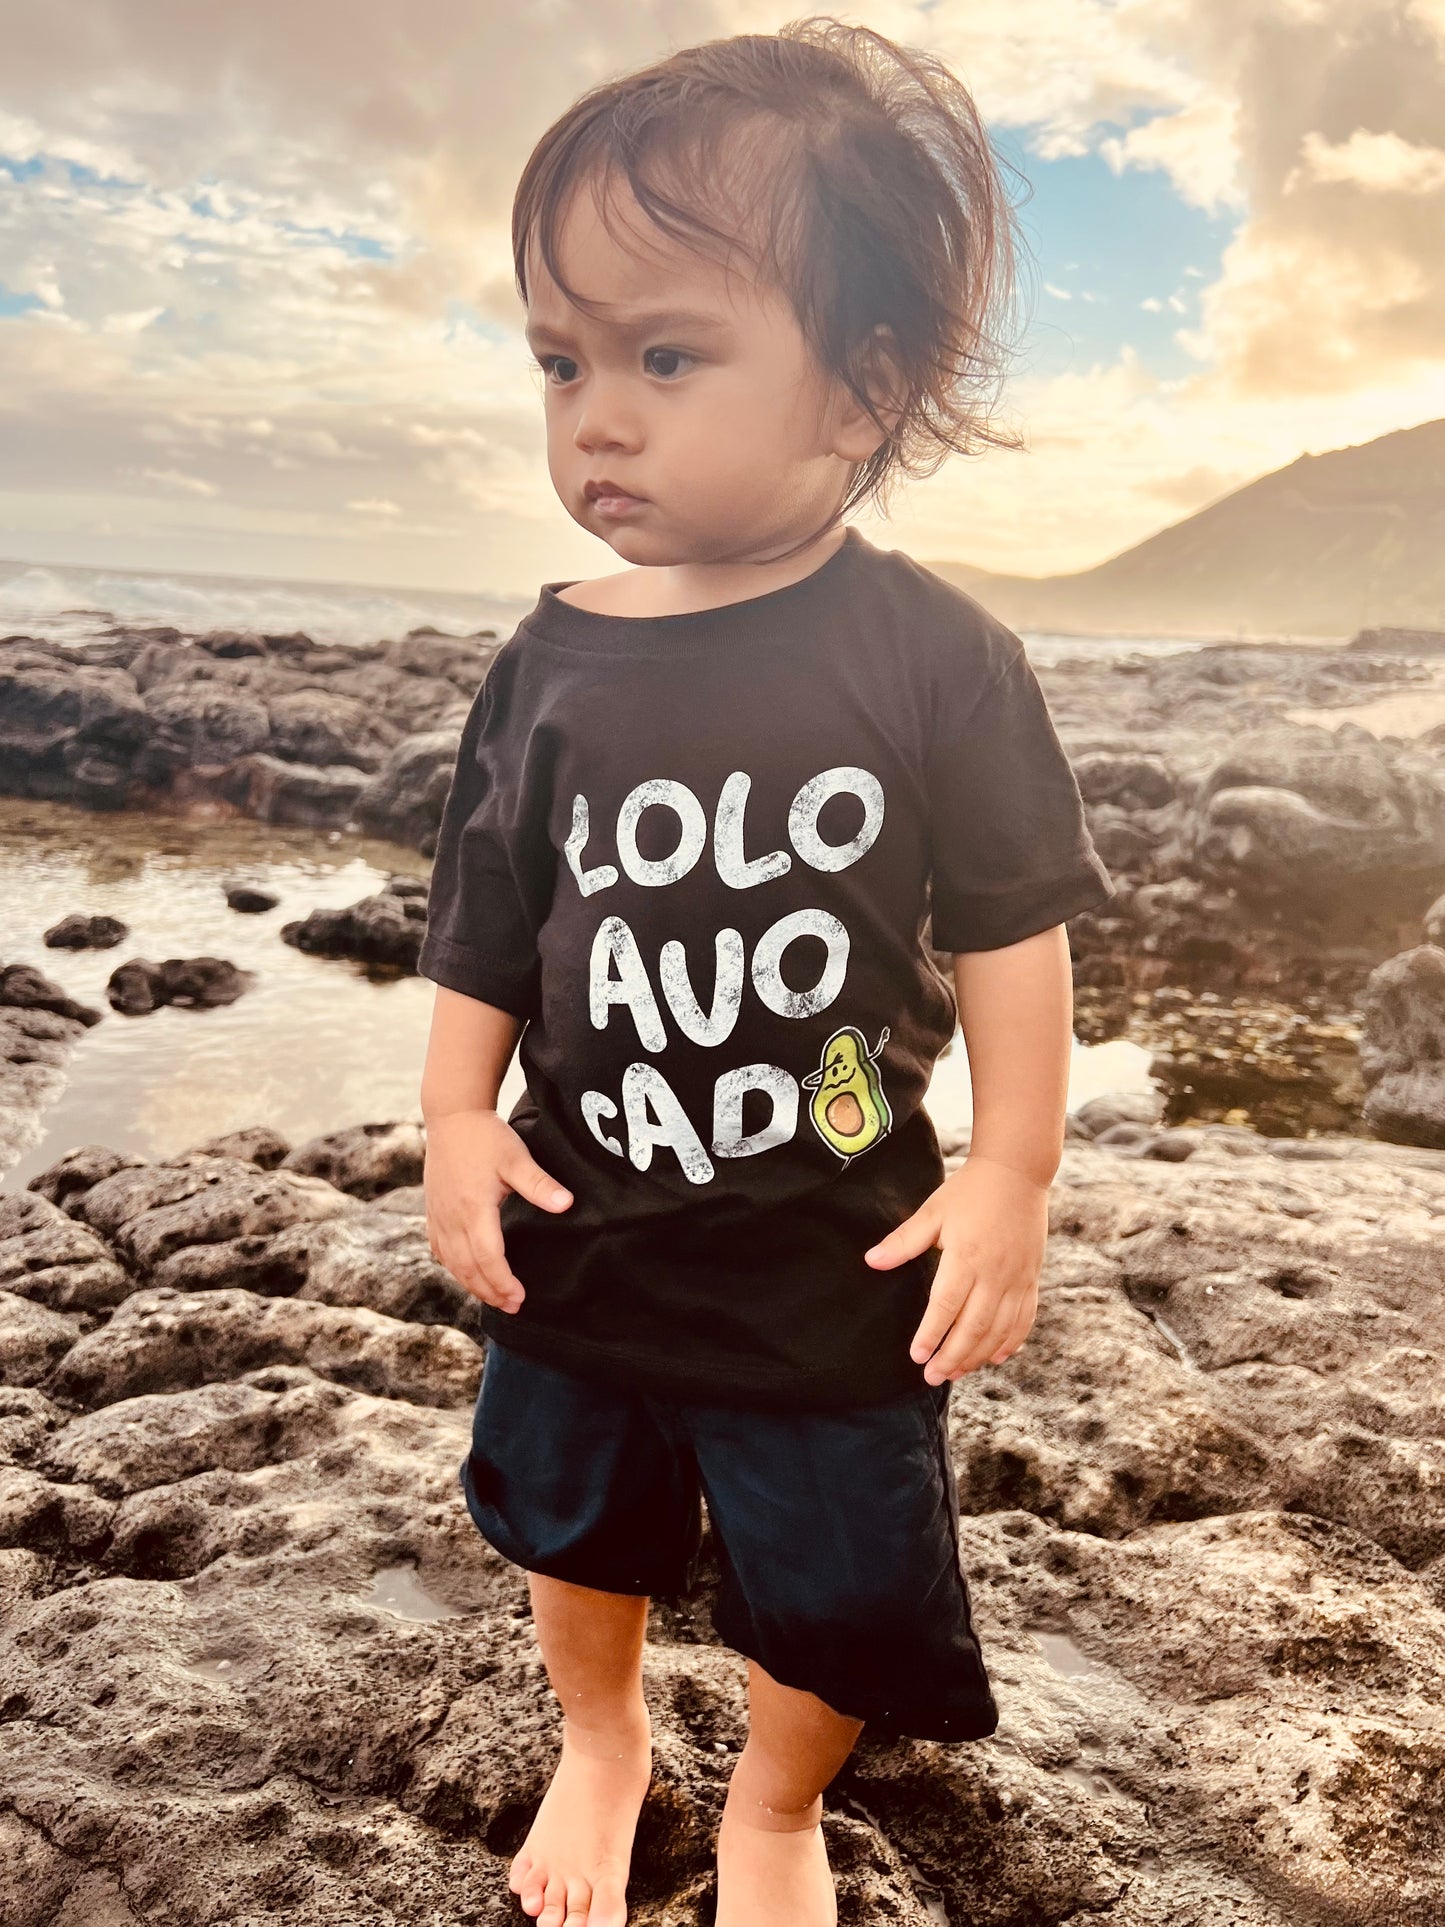 Lolo Avocado Toddler T-shirt